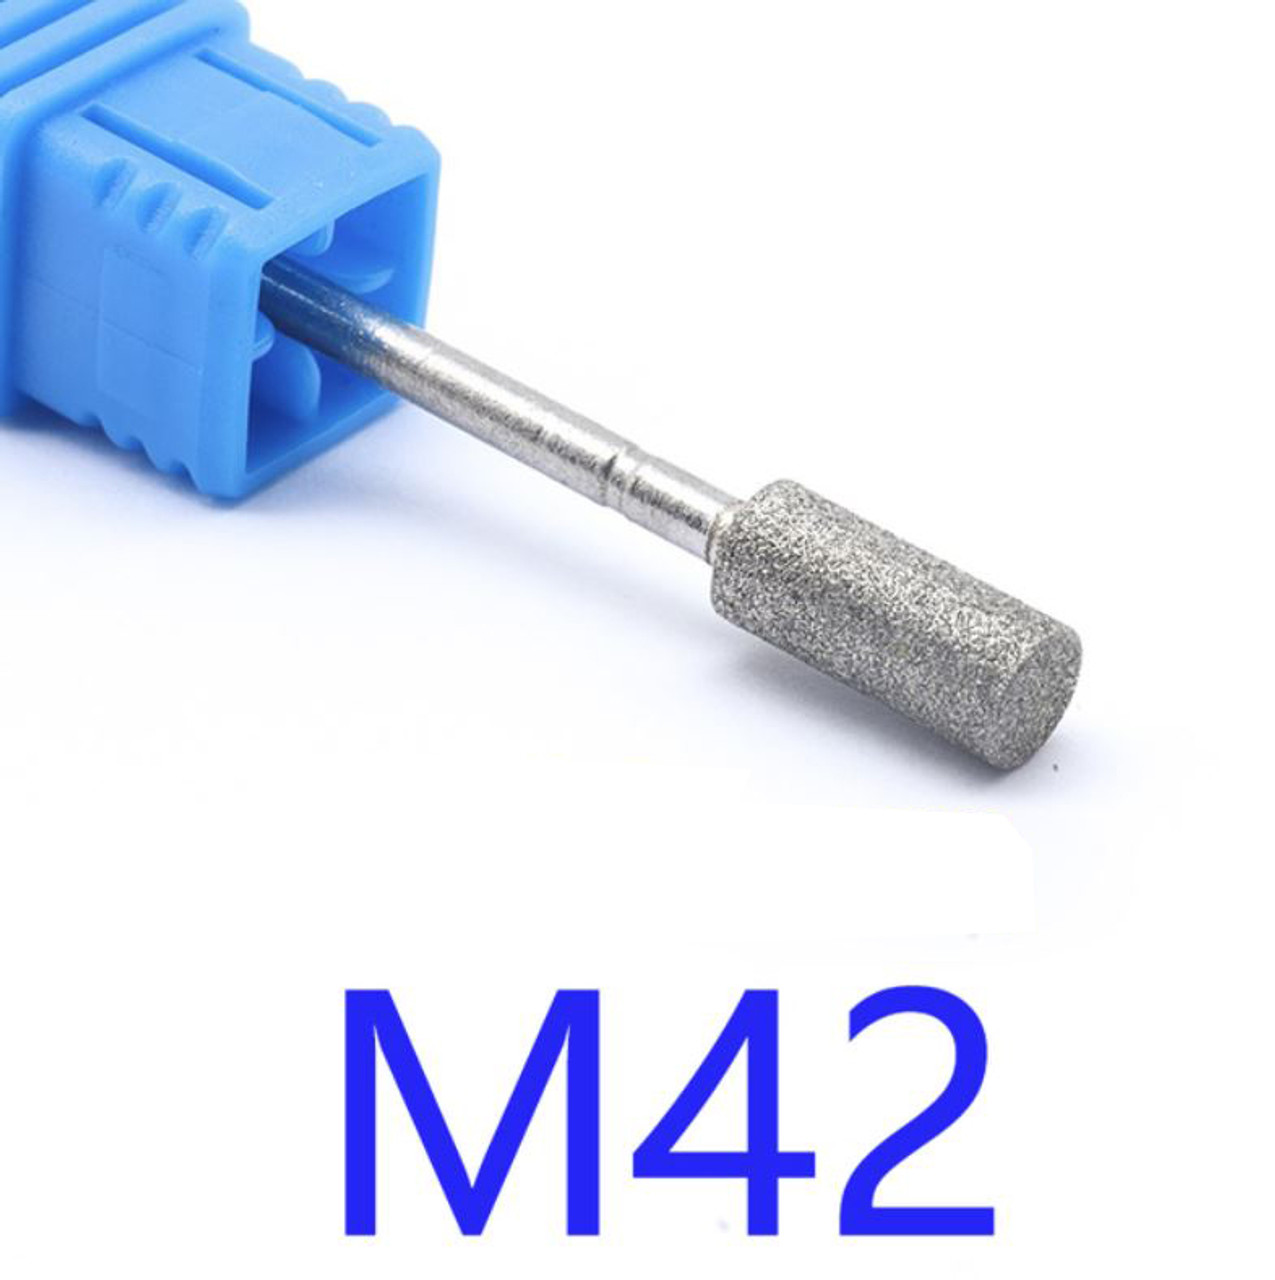 NDi beauty Diamond Drill Bit - 3/32 shank (MEDIUM) - M42